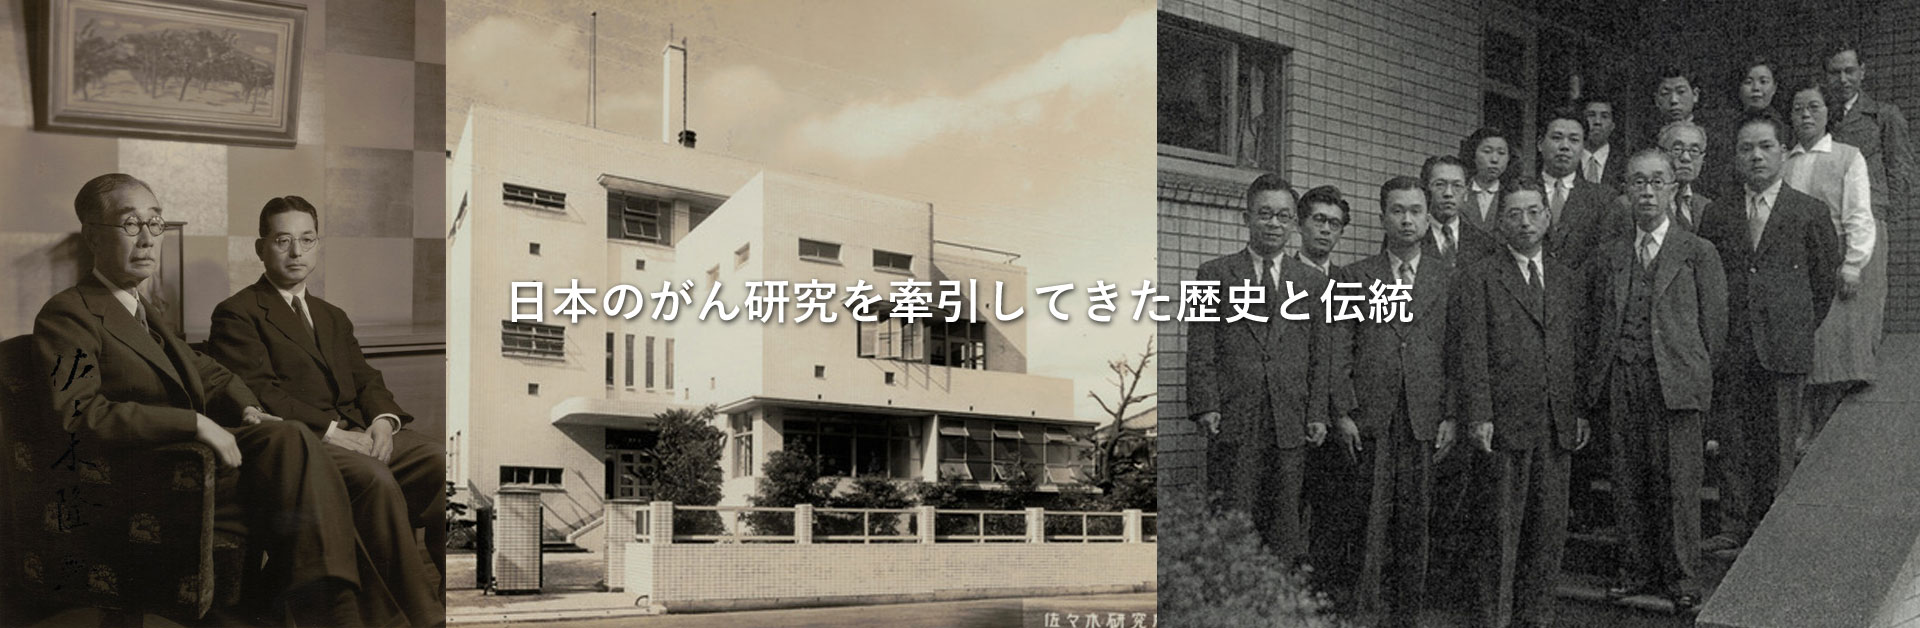 日本のがん研究を牽引してきた歴史と伝統